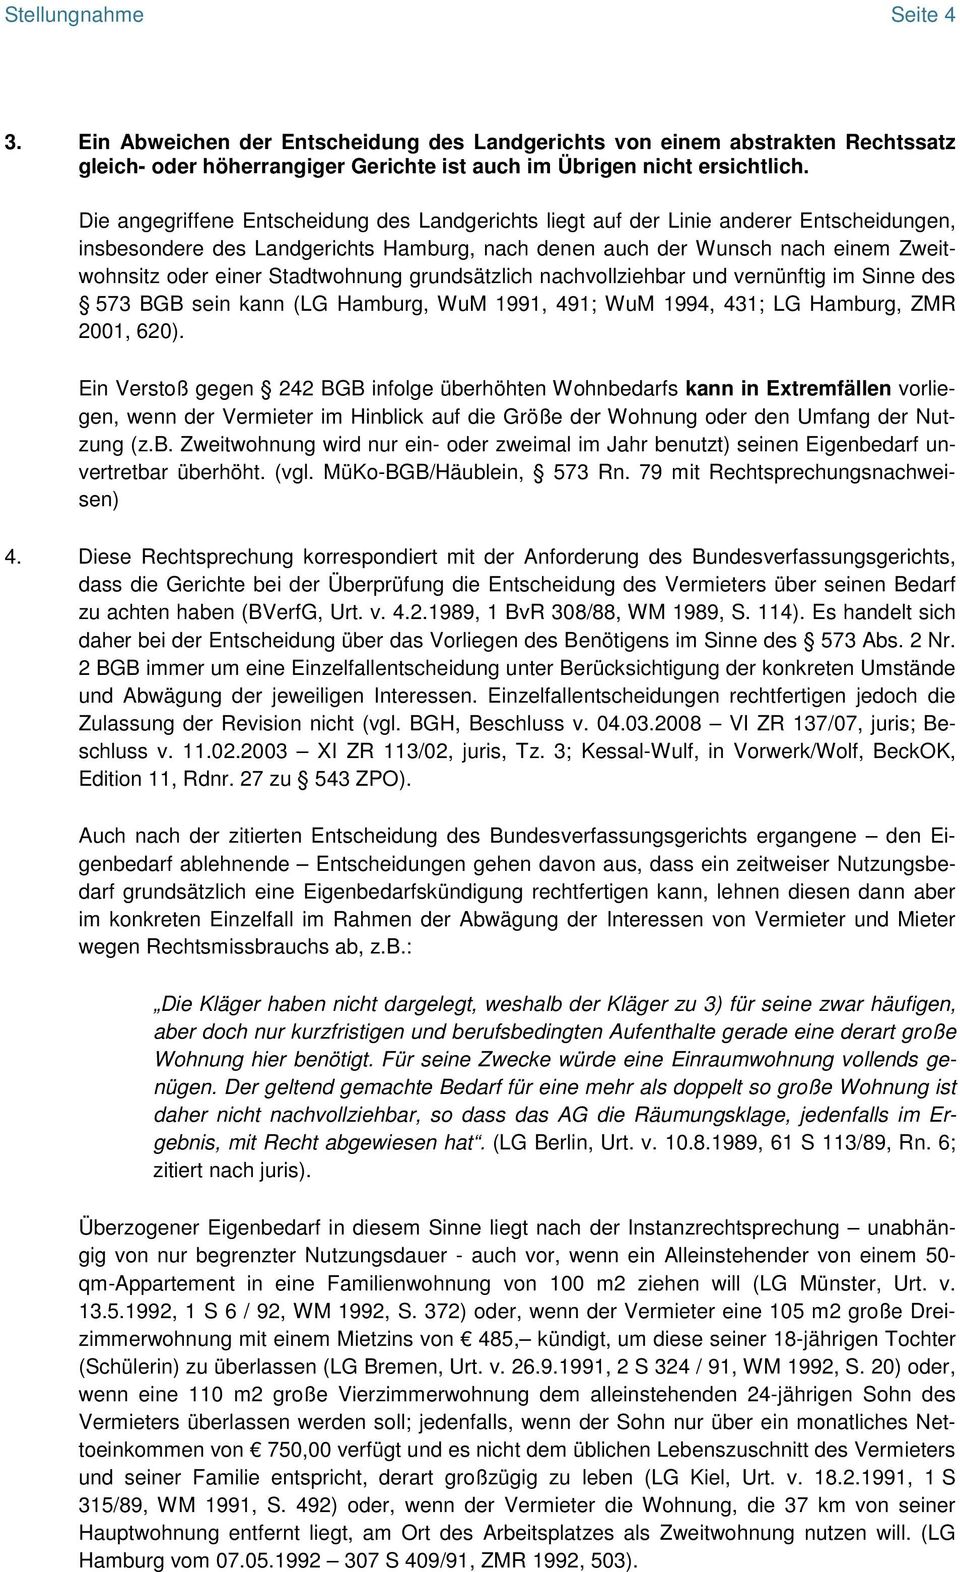 Stadtwohnung grundsätzlich nachvollziehbar und vernünftig im Sinne des 573 BGB sein kann (LG Hamburg, WuM 1991, 491; WuM 1994, 431; LG Hamburg, ZMR 2001, 620).